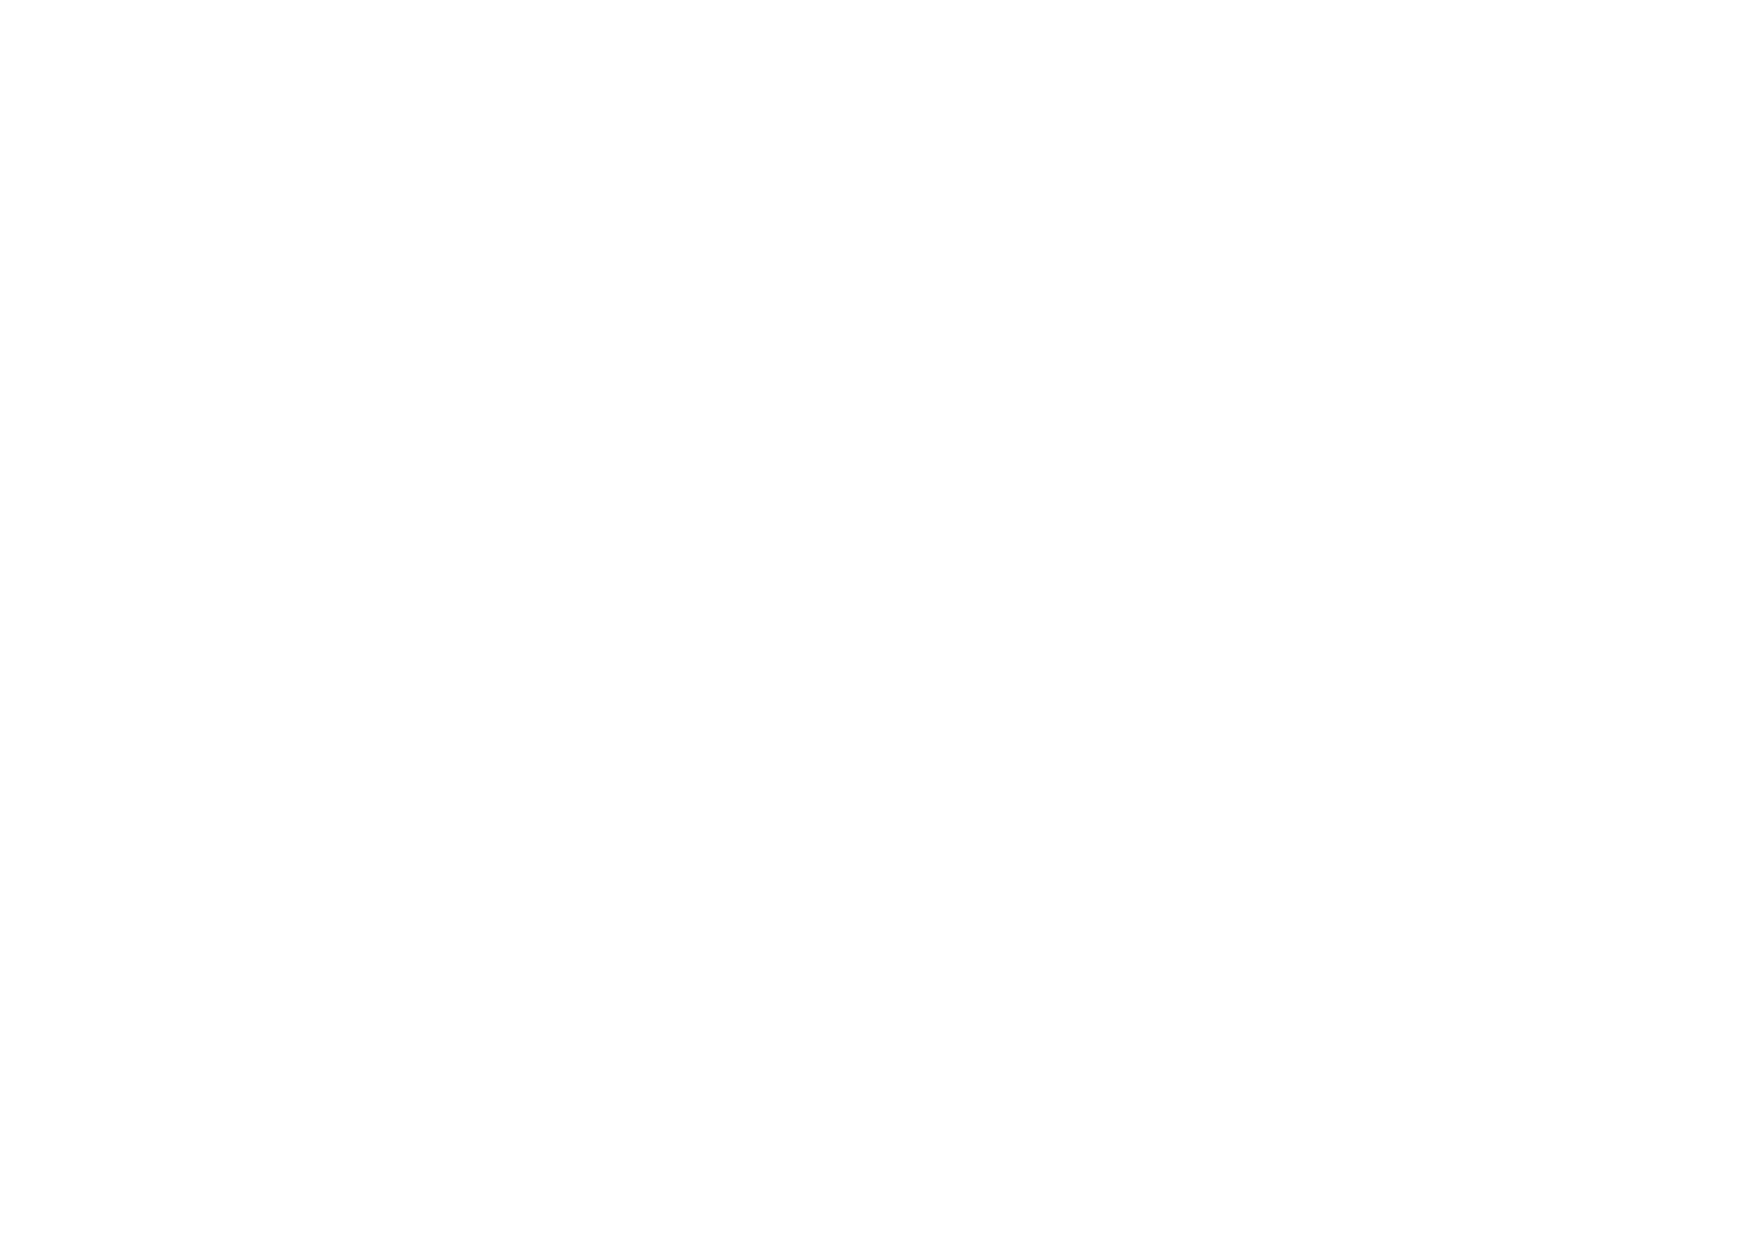 Ломанов Андрей Анатольевич. Науковий симпозіум з міжнародною участю "Вірусні інфекції і алергія в умовах пандемії COVID-19", 29 вересня - 1 жовтня 2021 року